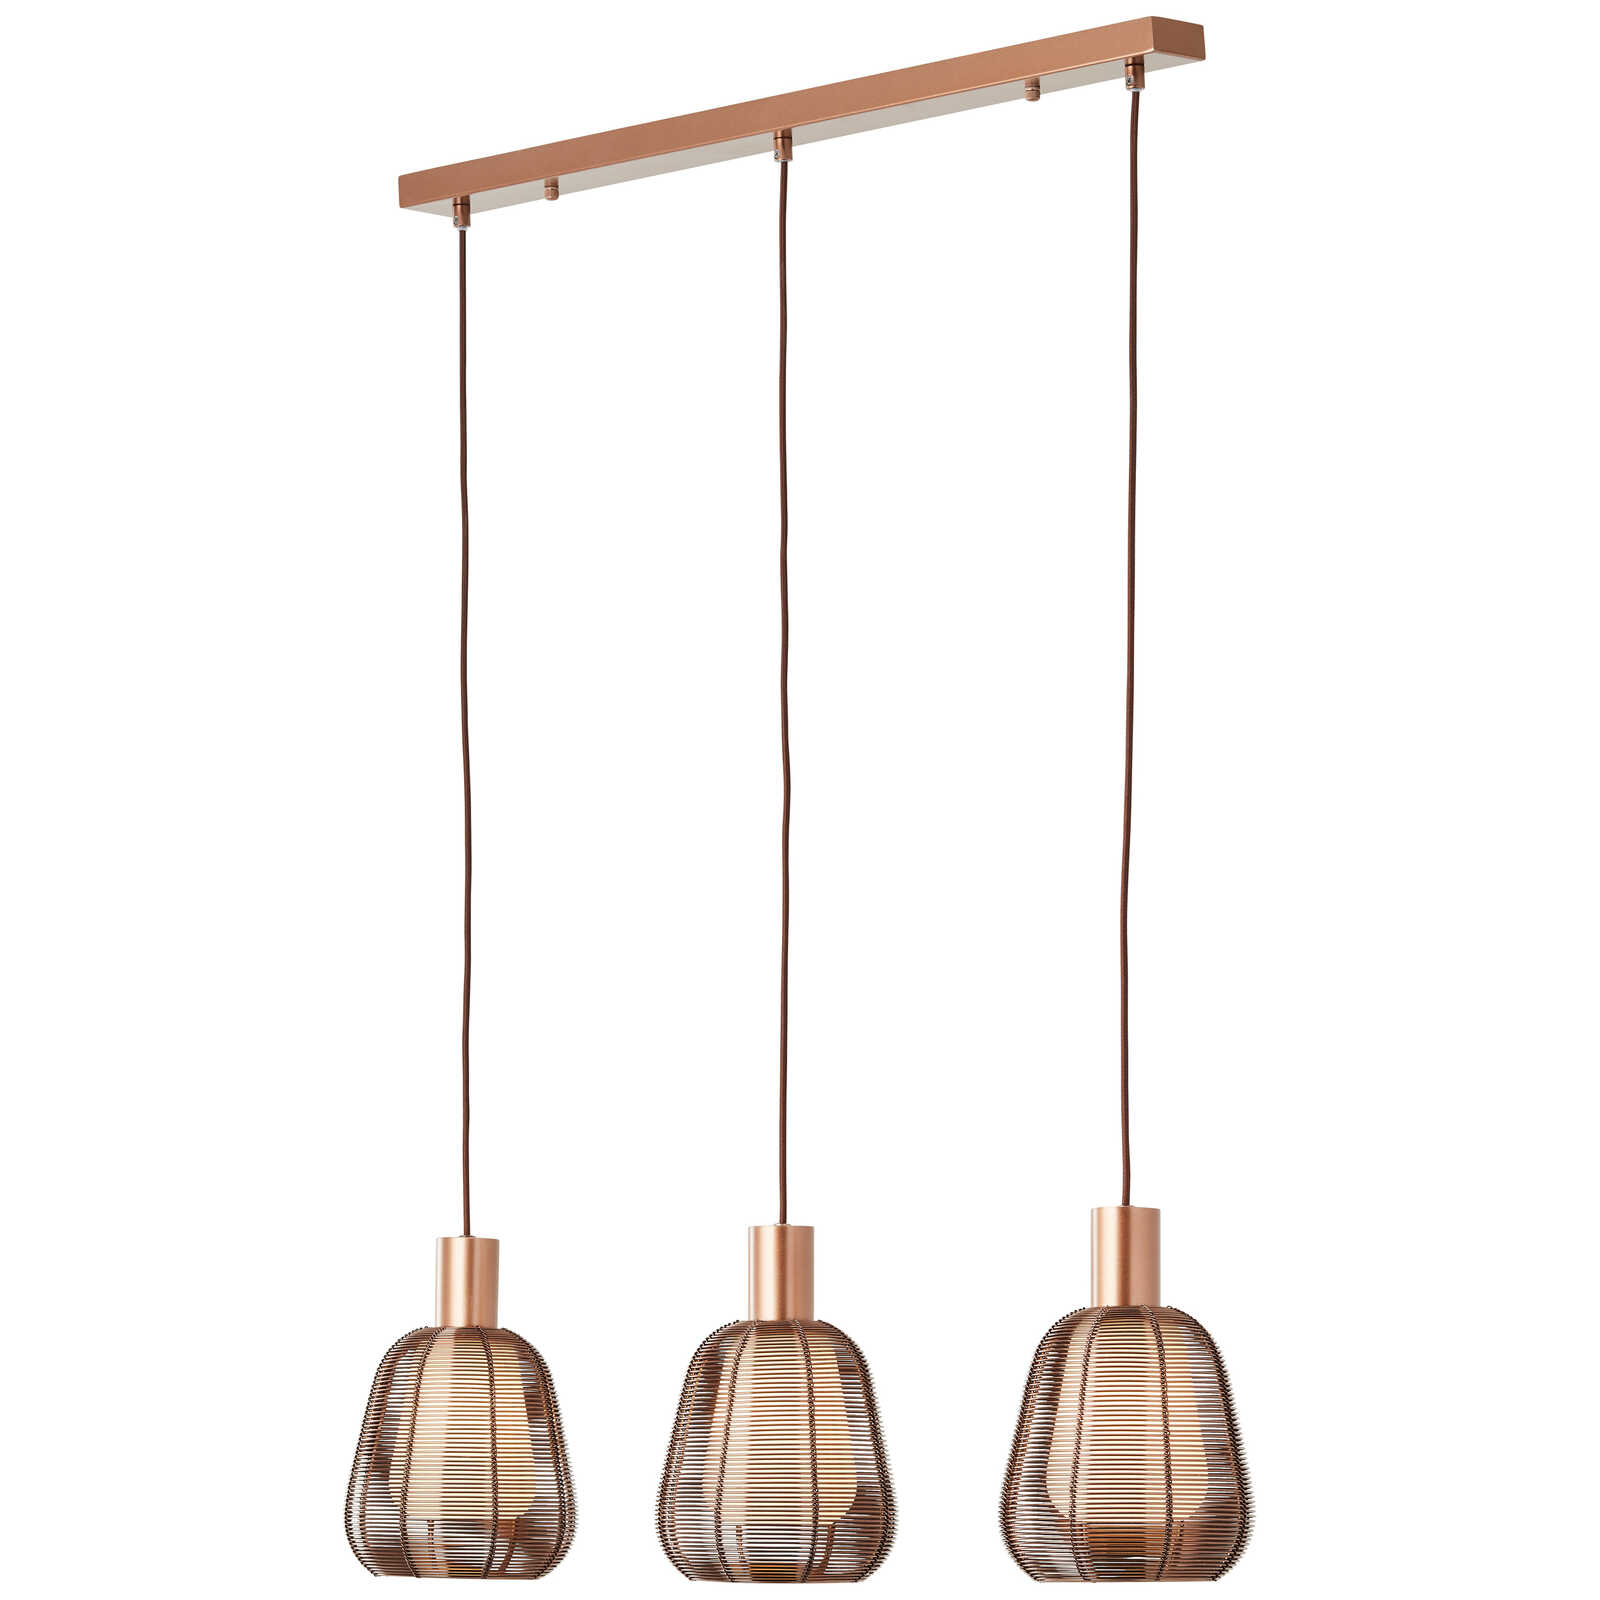             Metalen hanglamp - Thore 2 - Bruin
        